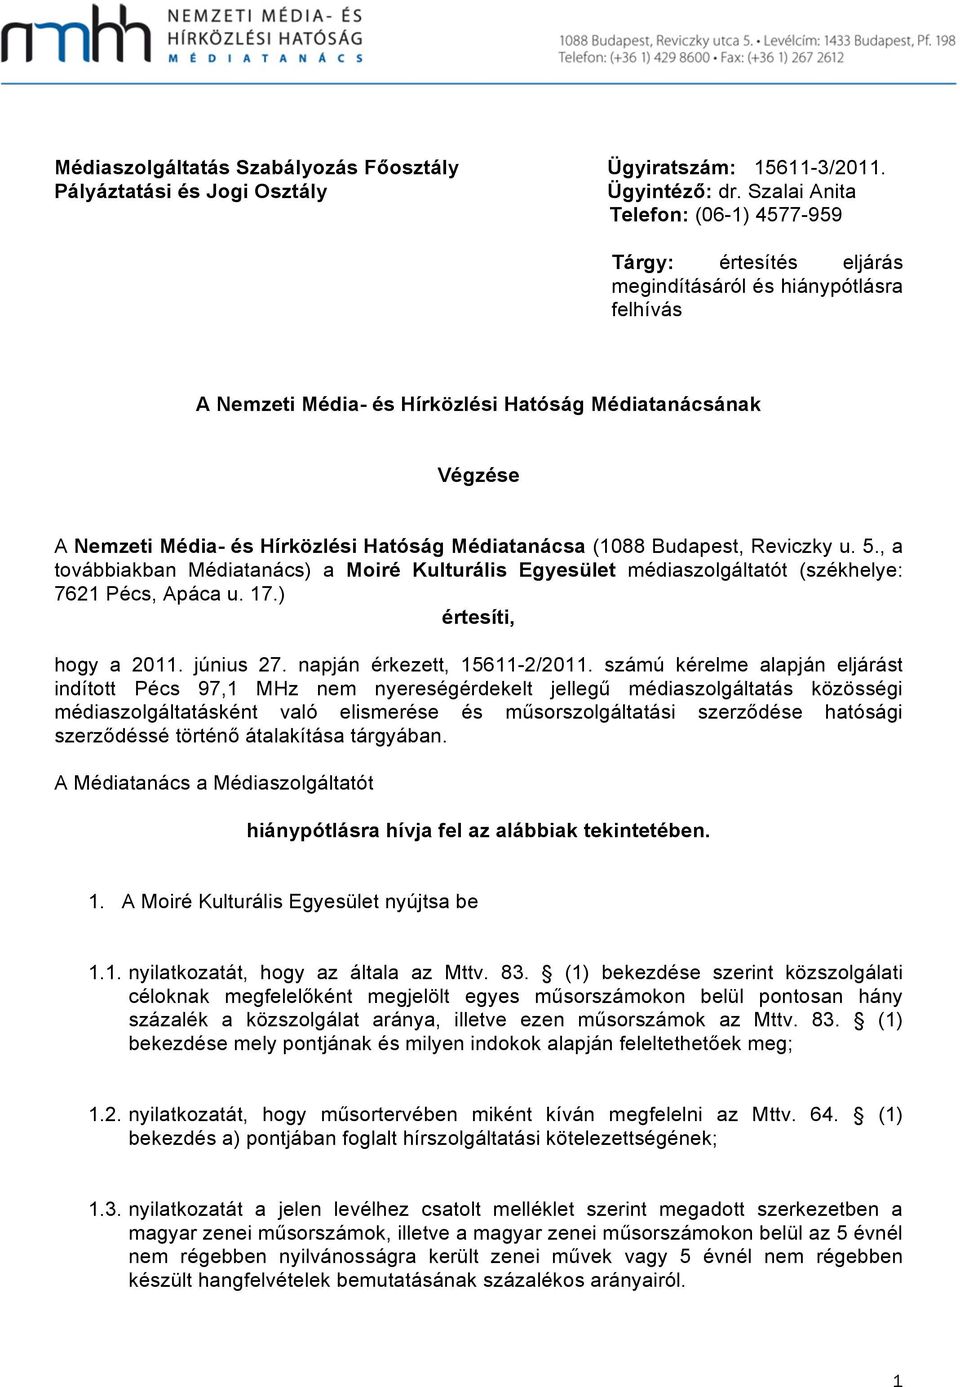 Hatóság Médiatanácsa (1088 Budapest, Reviczky u. 5., a továbbiakban Médiatanács) a Moiré Kulturális Egyesület médiaszolgáltatót (székhelye: 7621 Pécs, Apáca u. 17.) értesíti, hogy a 2011. június 27.